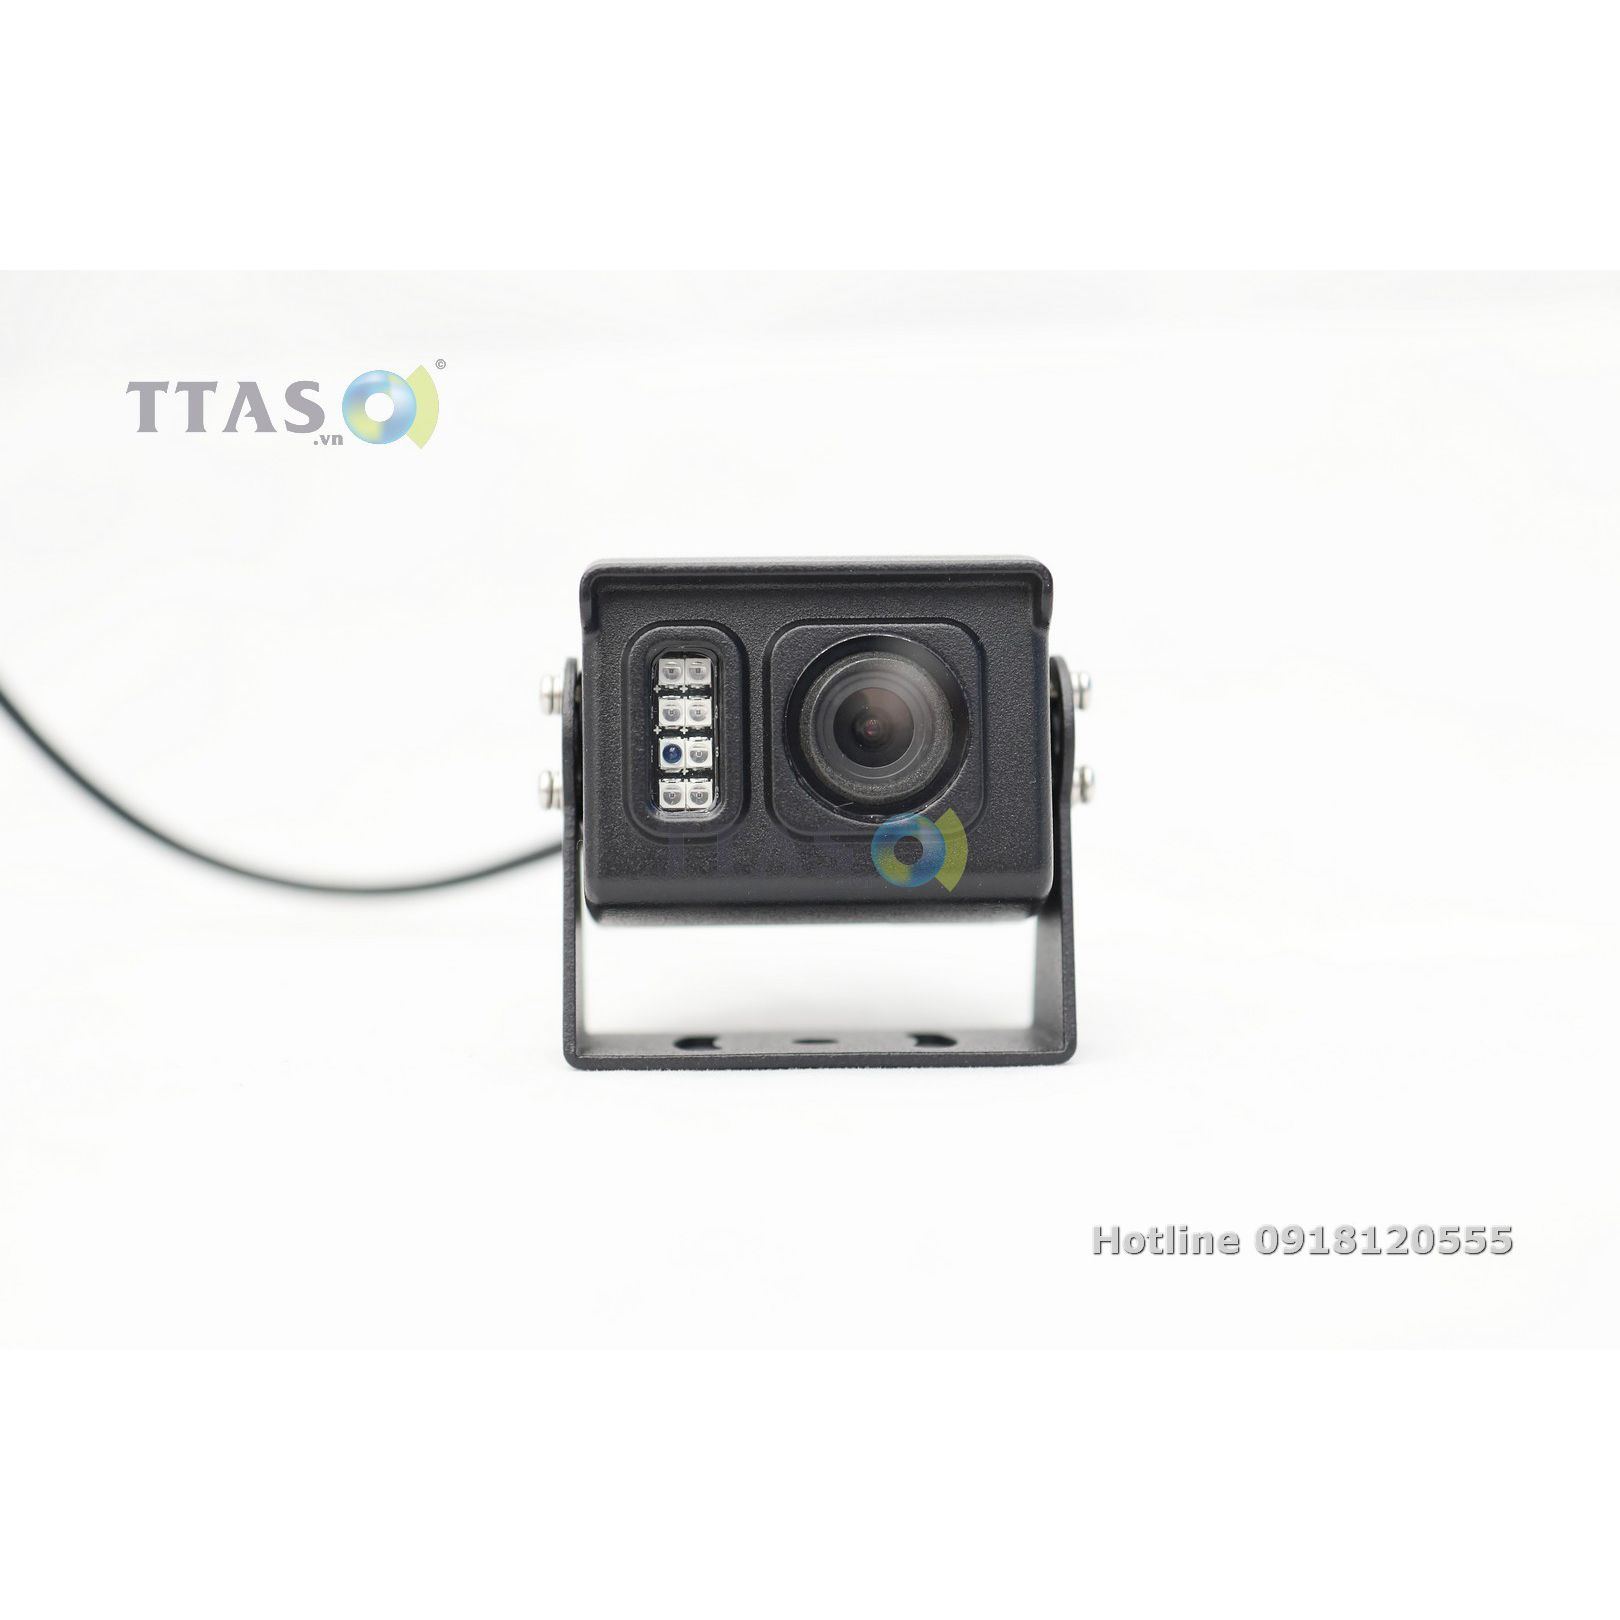  Camera Hành Trình R4000S hạn chế điểm mù của lái xe 